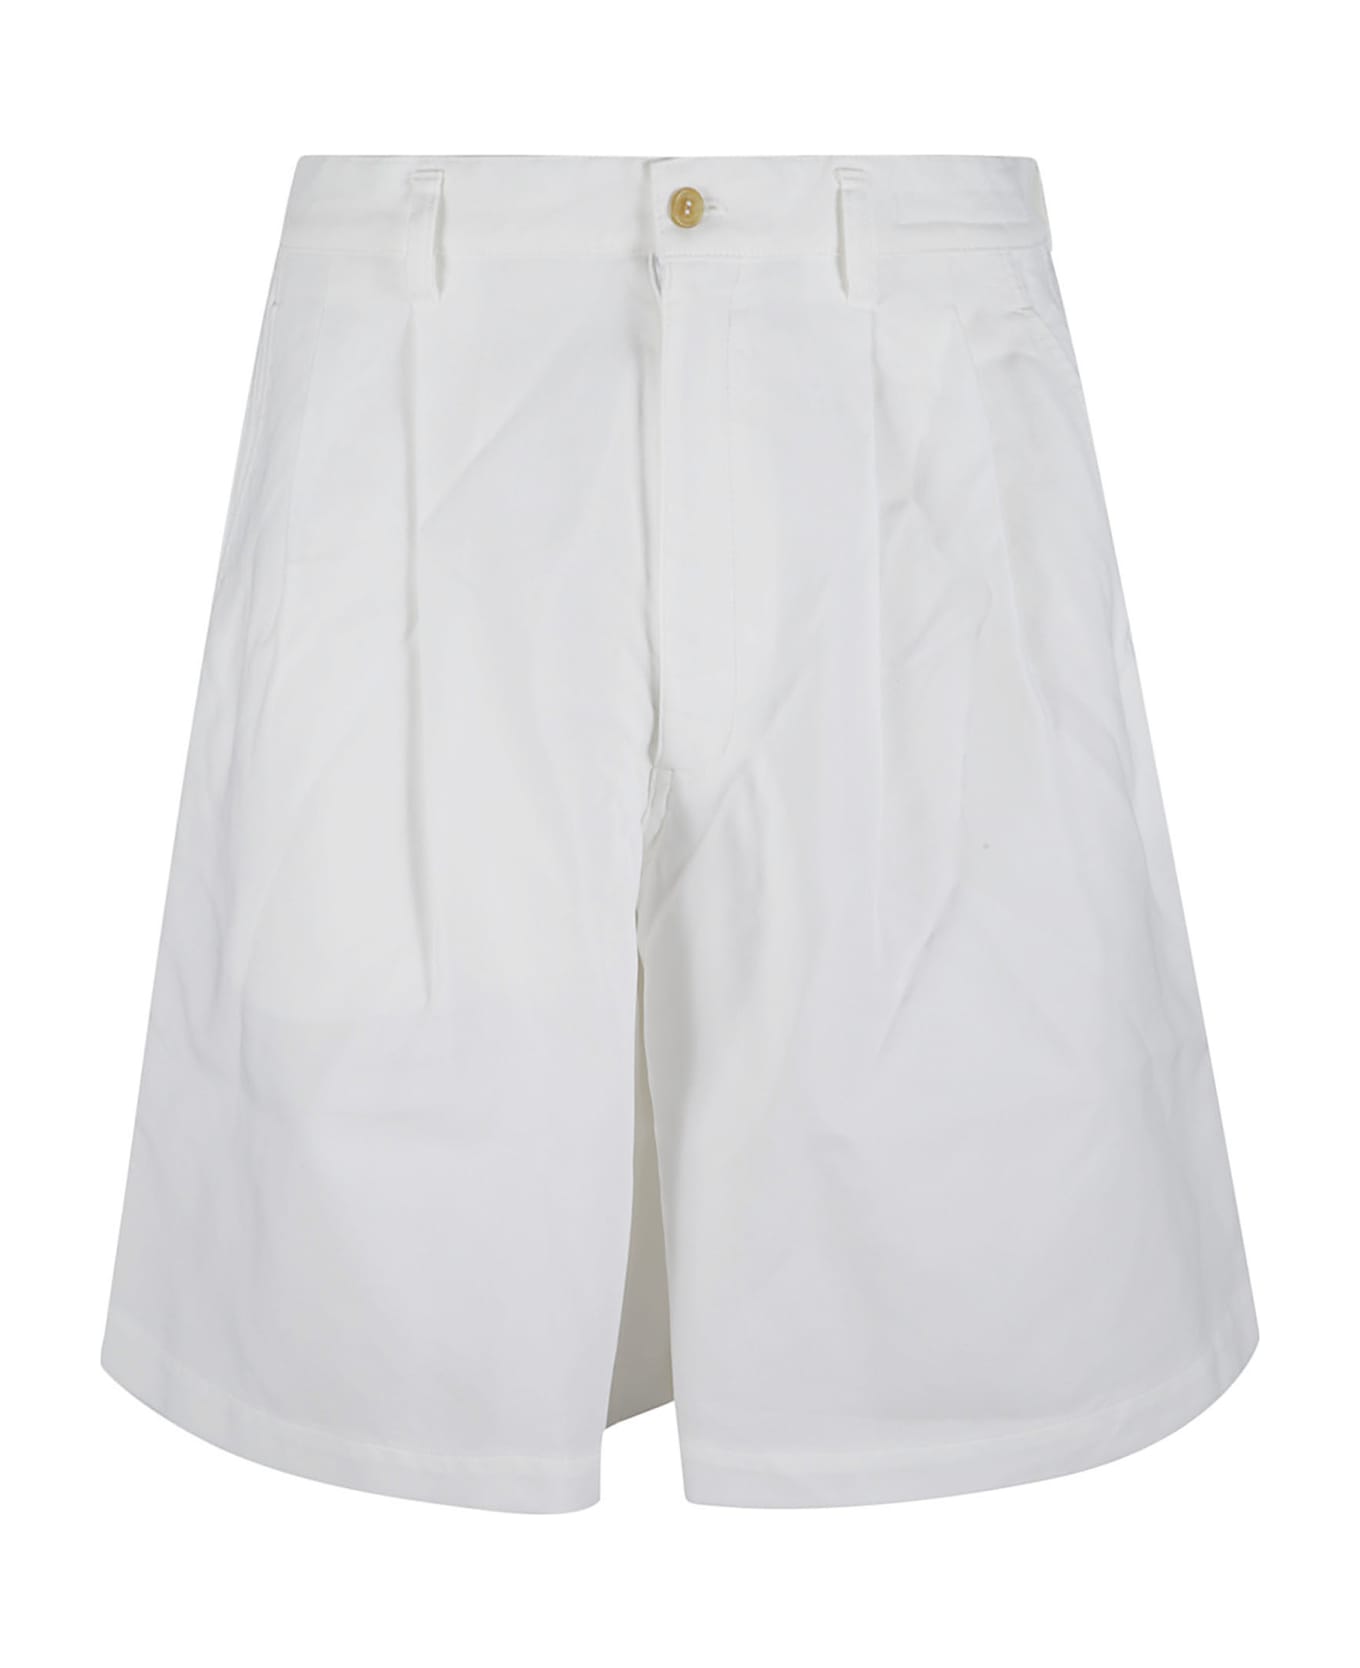 Comme des Garçons Shirt Buttoned Classic Shorts - White